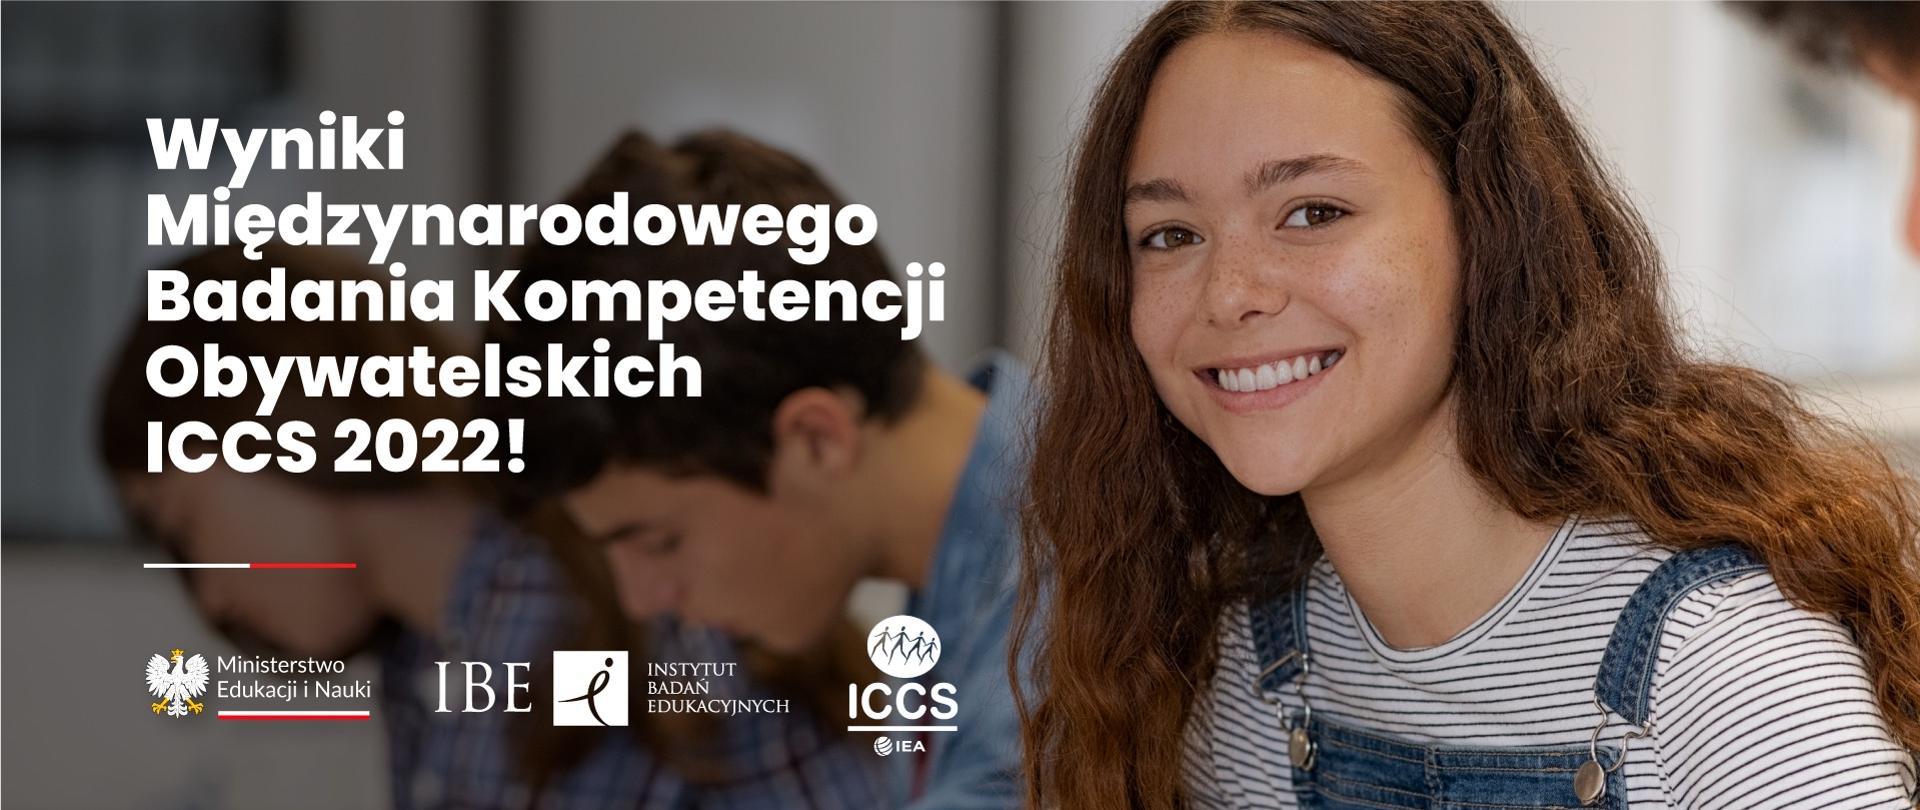 Napis wyniki Międzynarodowego Badania Kompetencji Obywatelskich ICCS 2022 poniżej trzy logotypy. Po prawej stronie uśmiechnięta dziewczynka z długimi włosami. Za nią kontruy innych postaci 